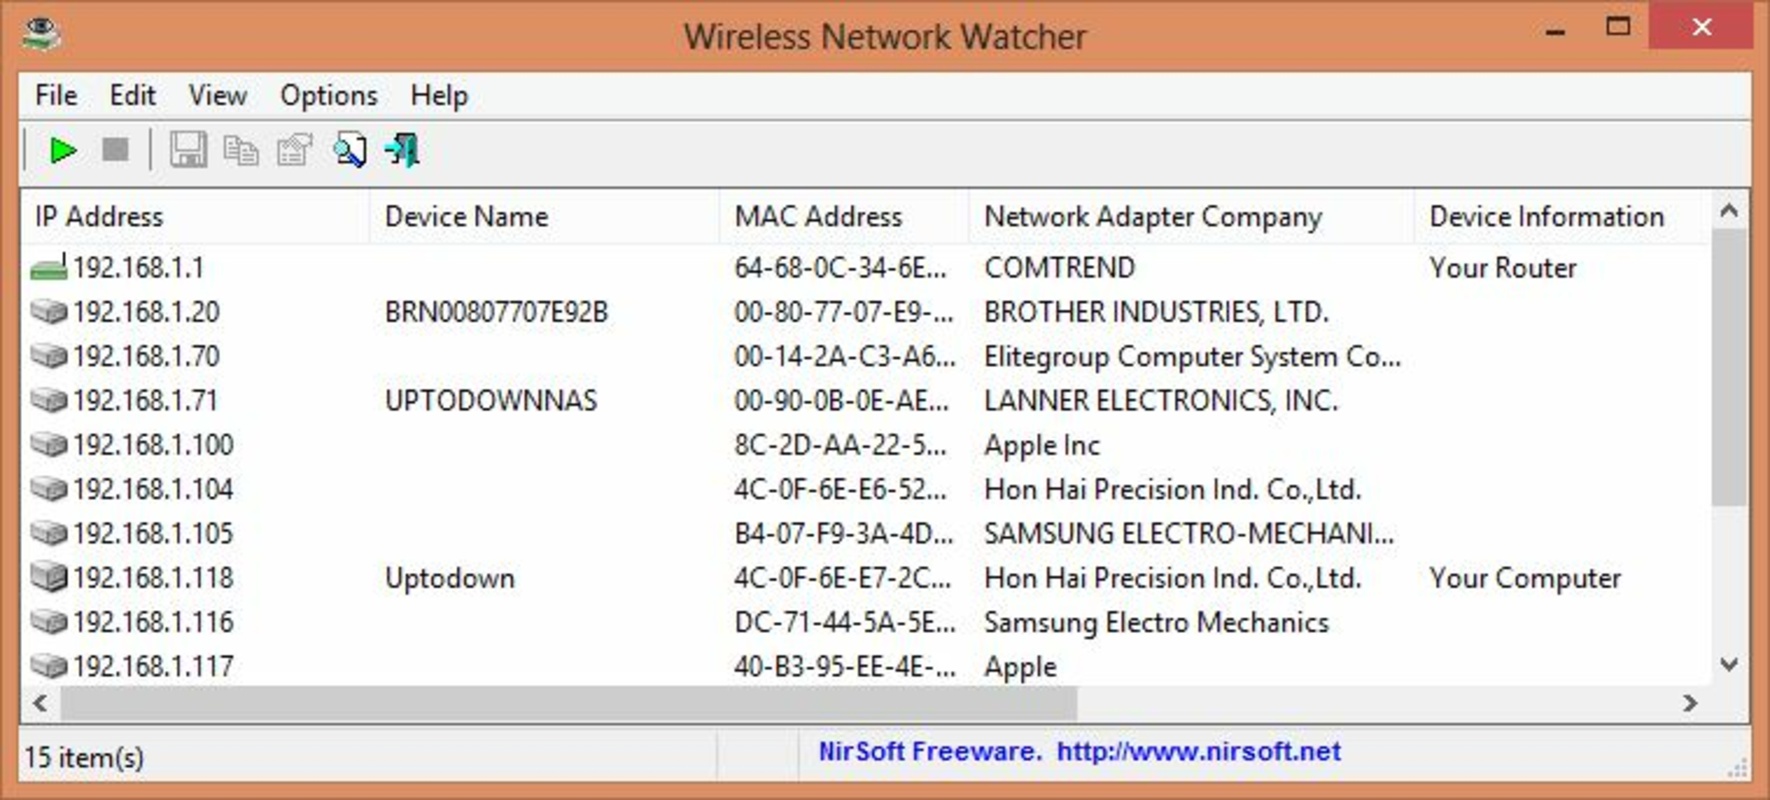 Wireless Network Watcher 2.31 feature